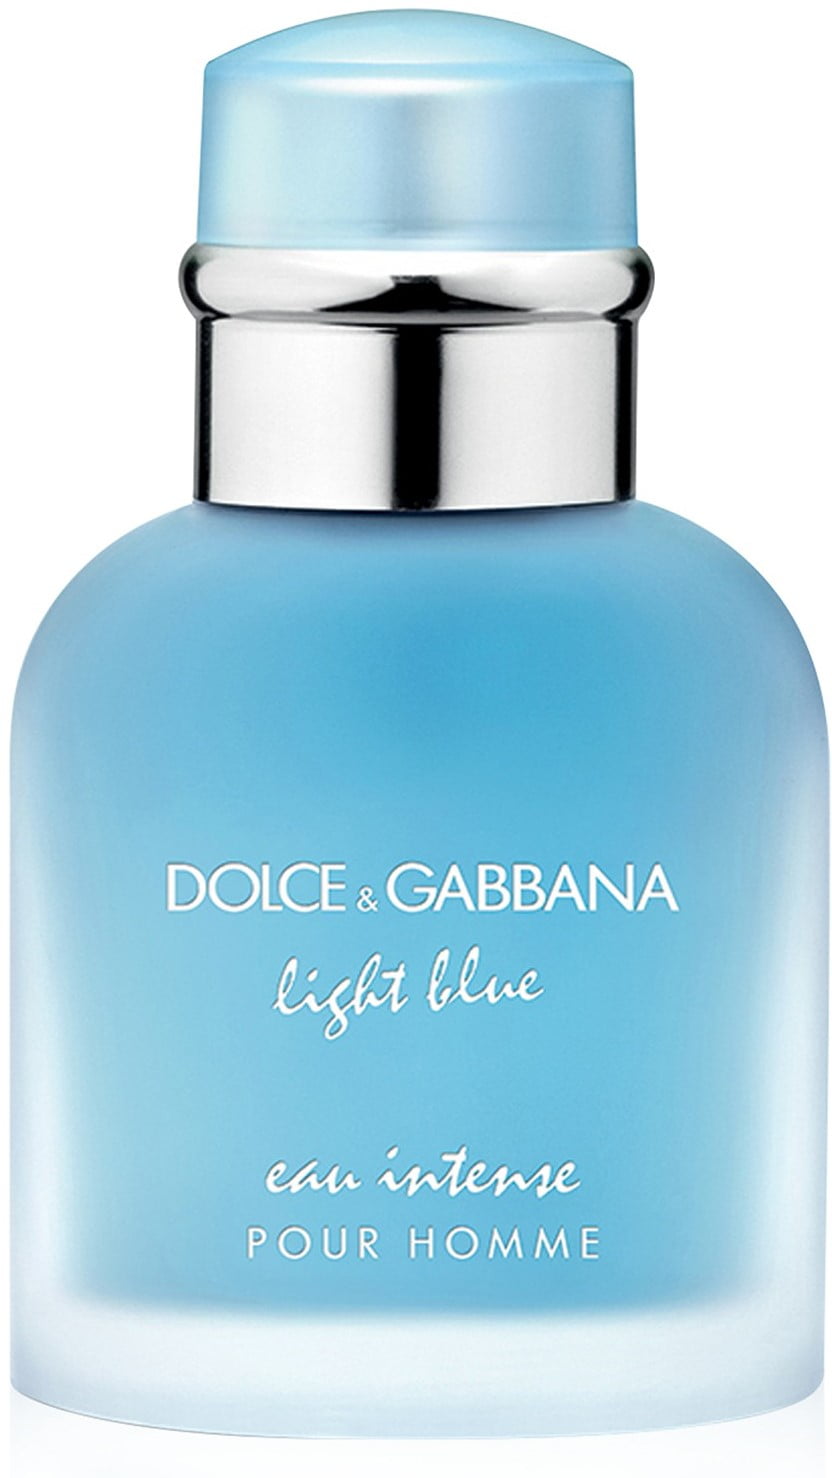 dolce gabbana light blue walmart